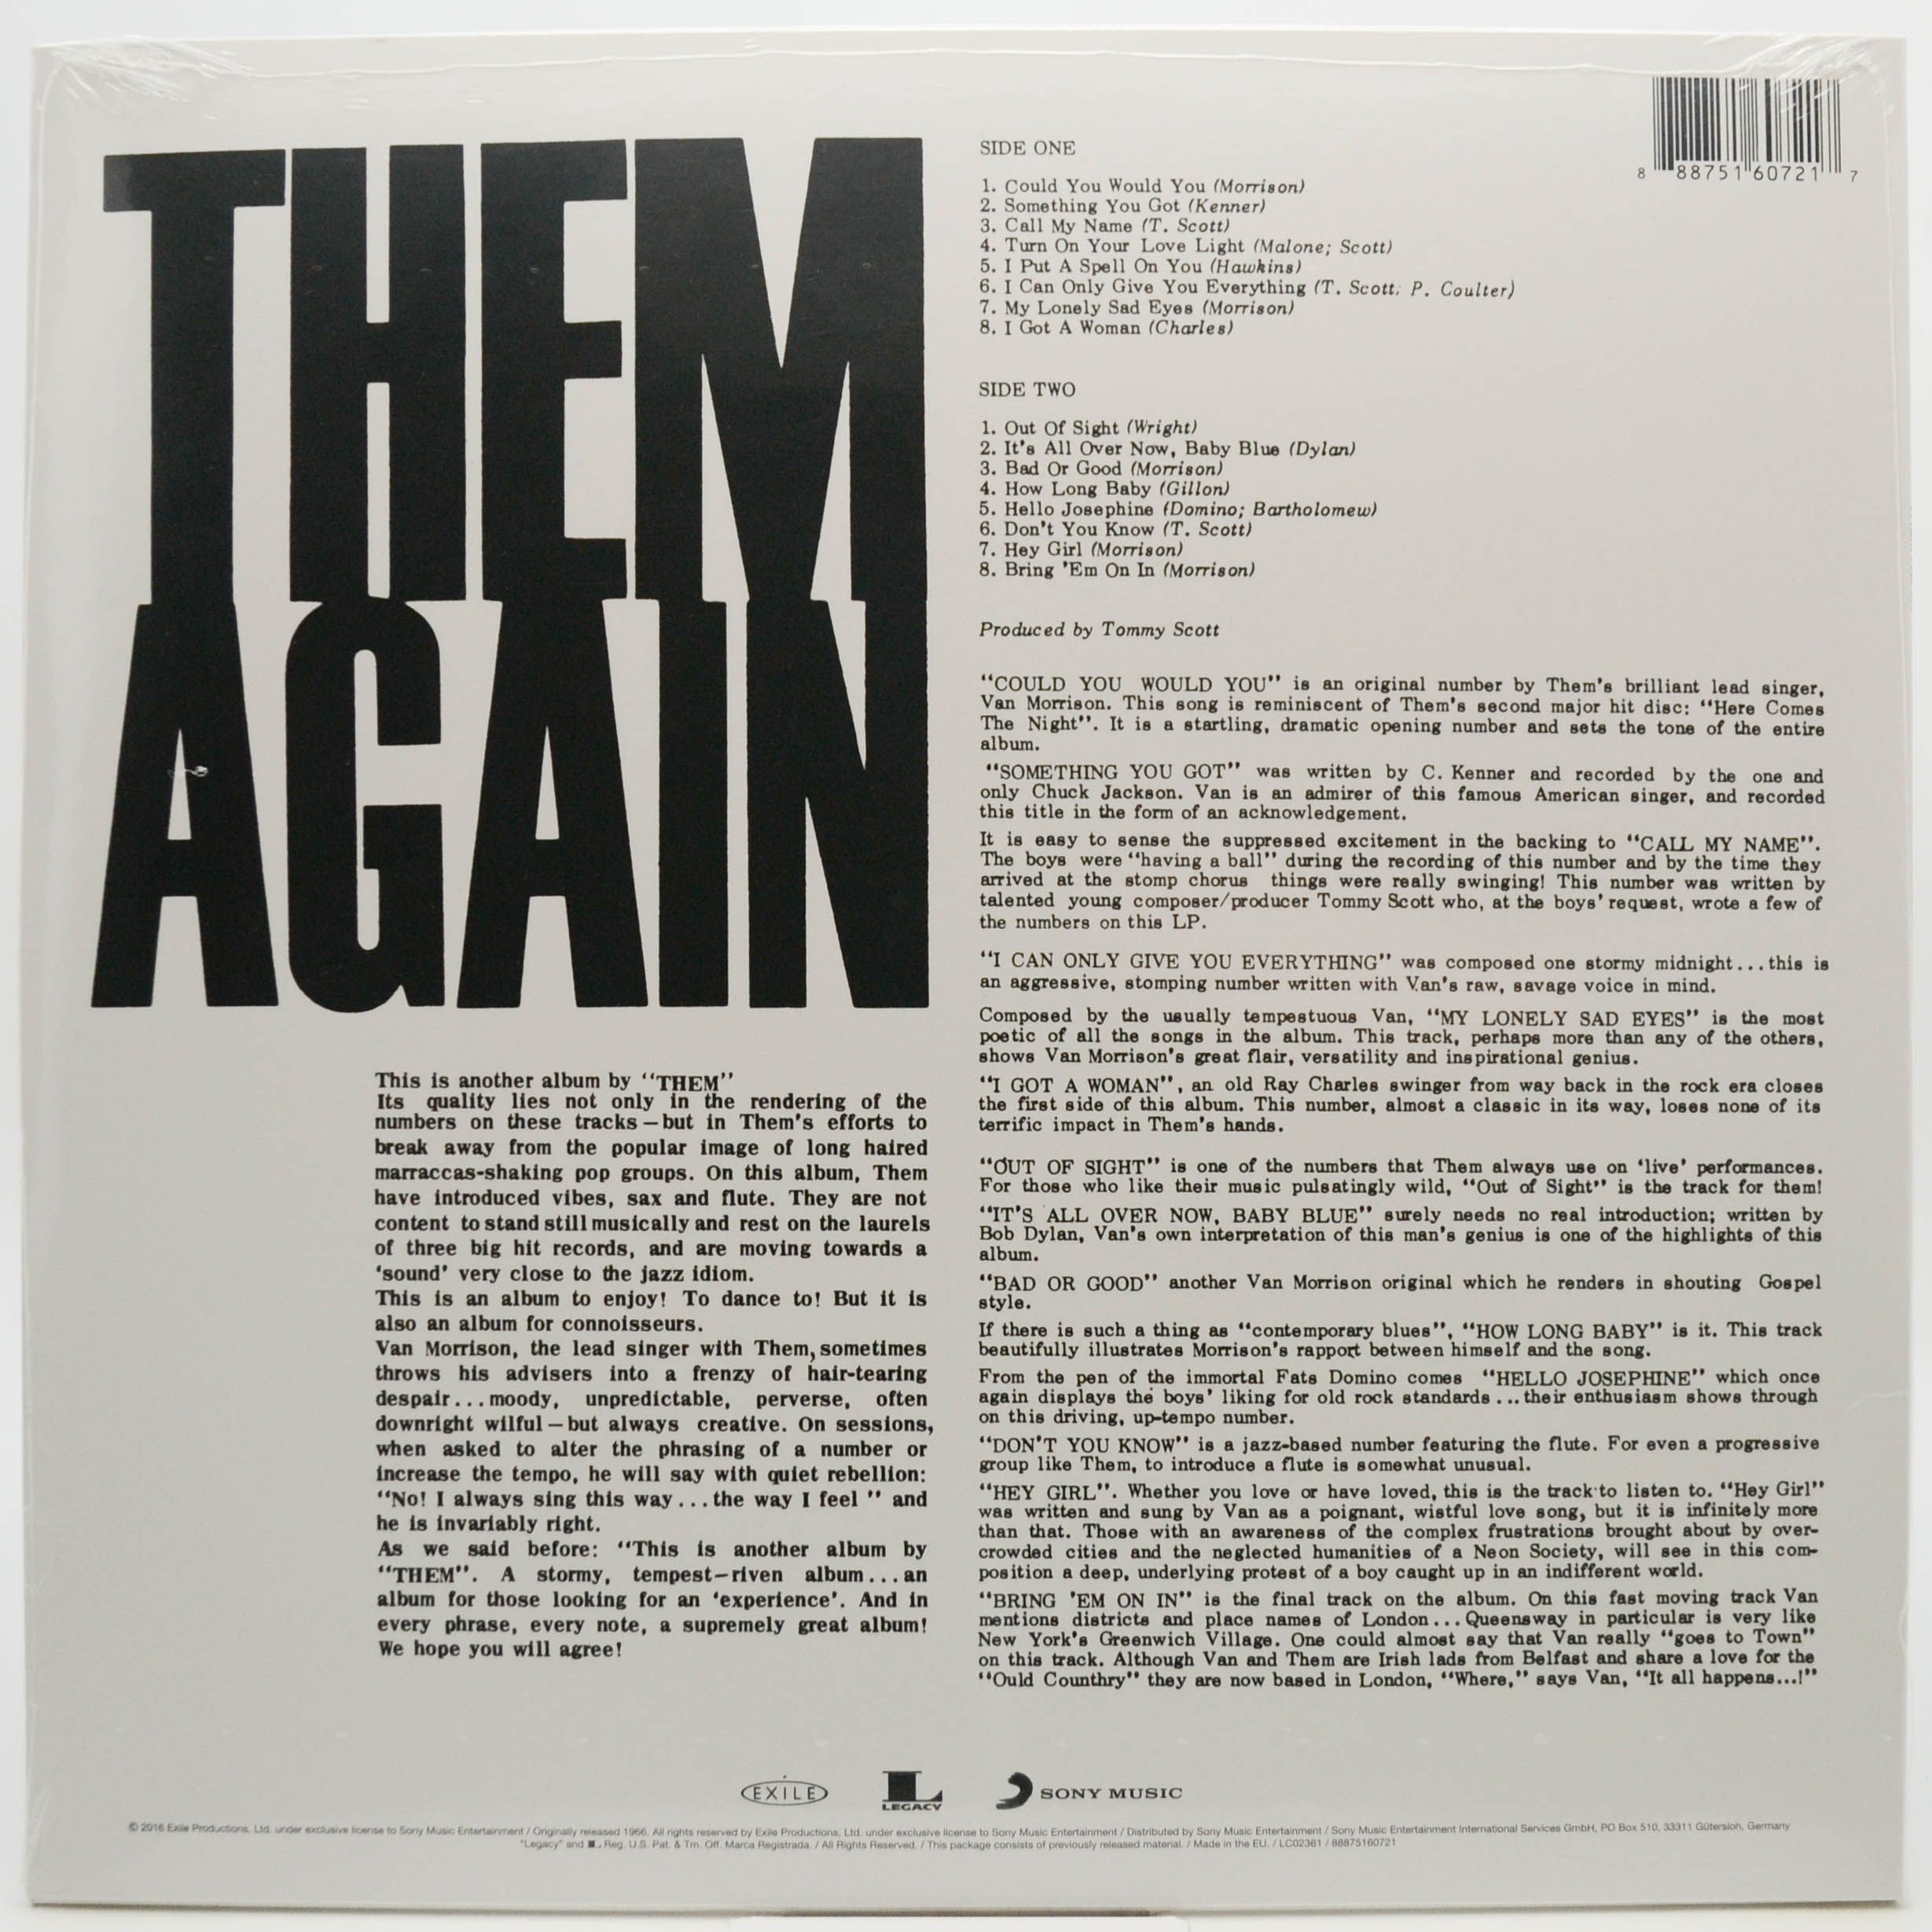 Them — Them Again, 1966